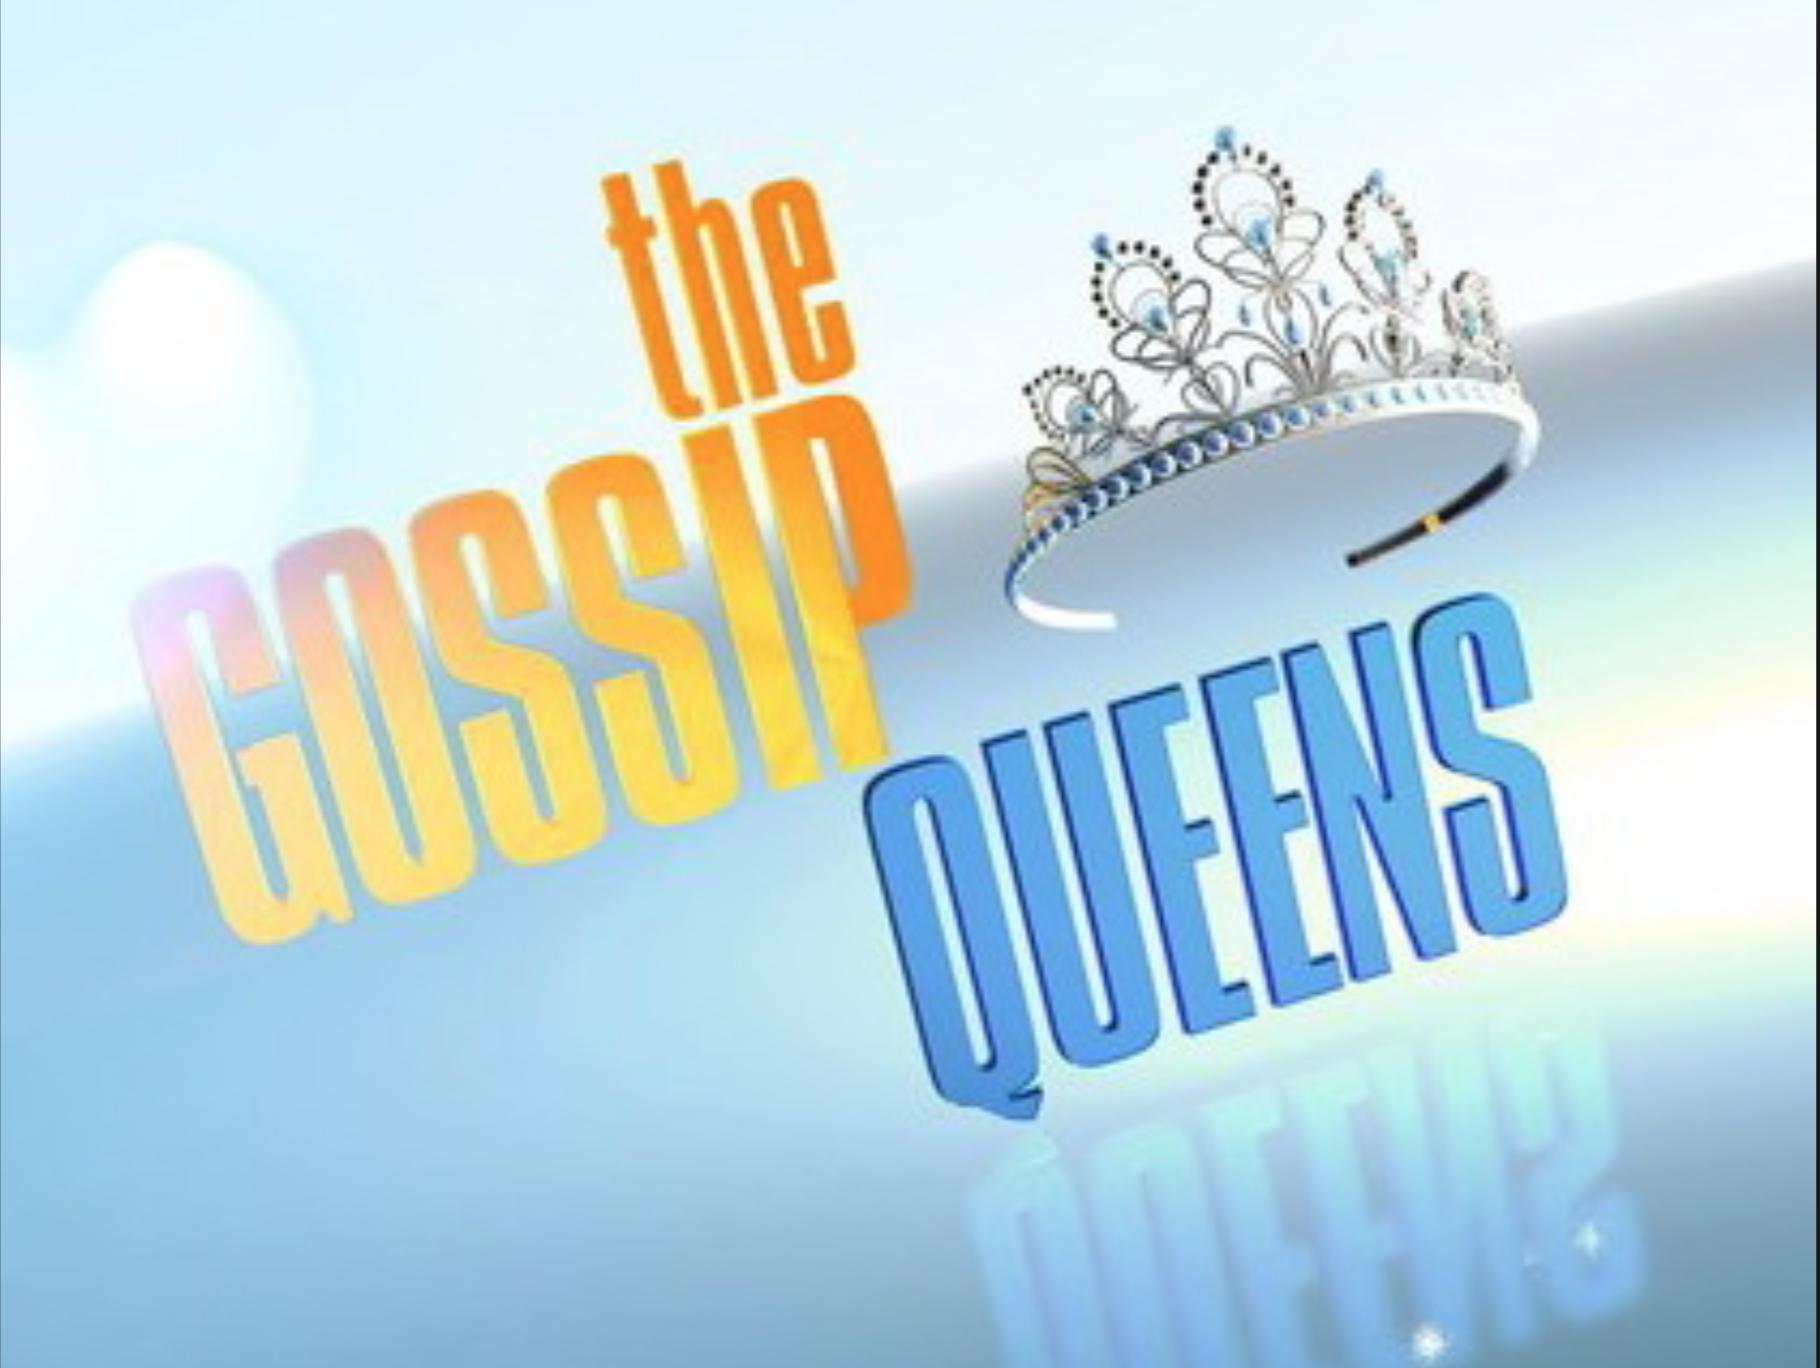 The Gossip Queens (2010)